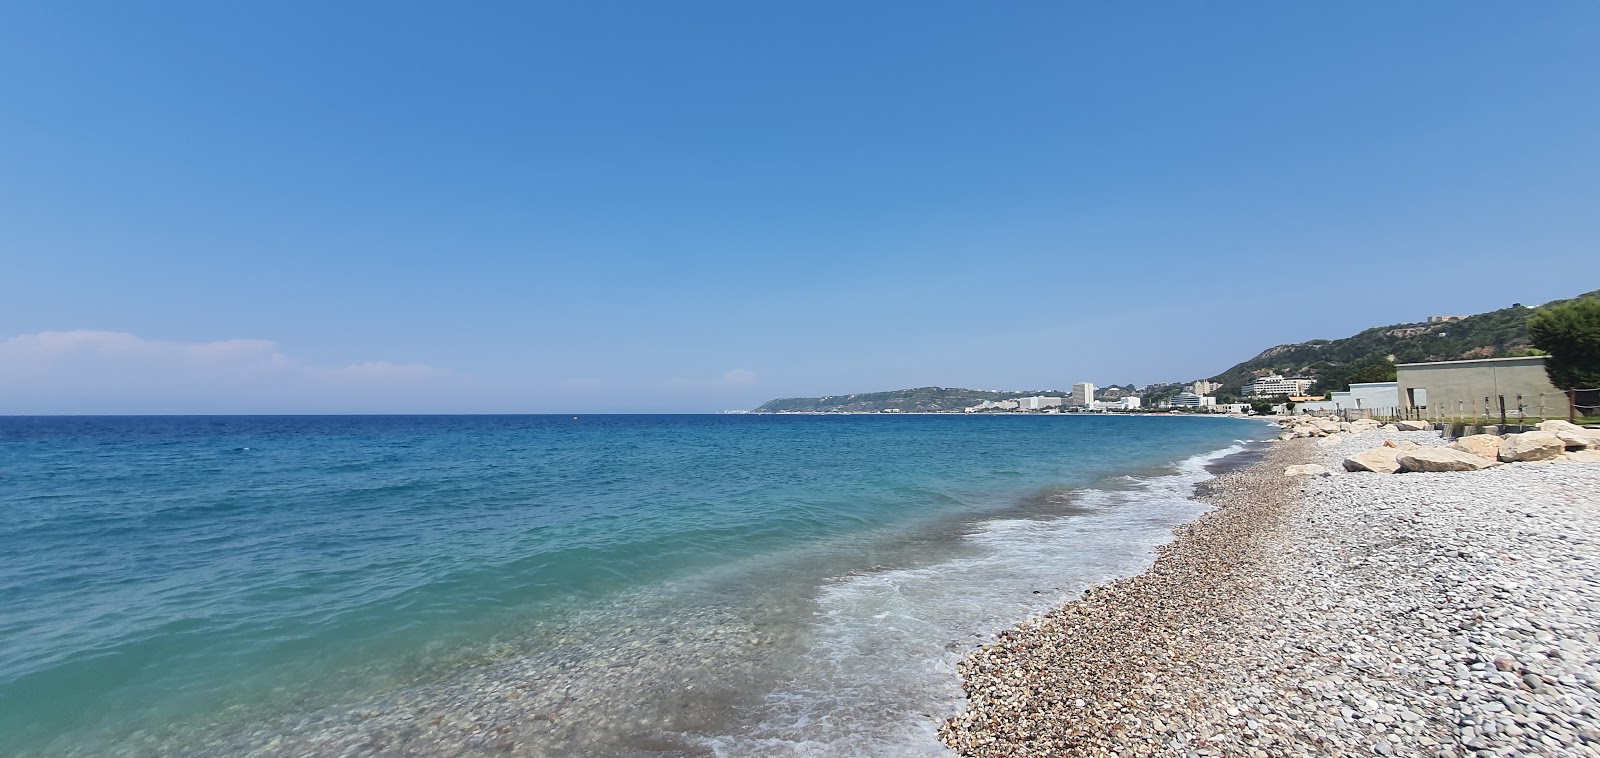 Ialysos beach II'in fotoğrafı çakıl ile kum yüzey ile